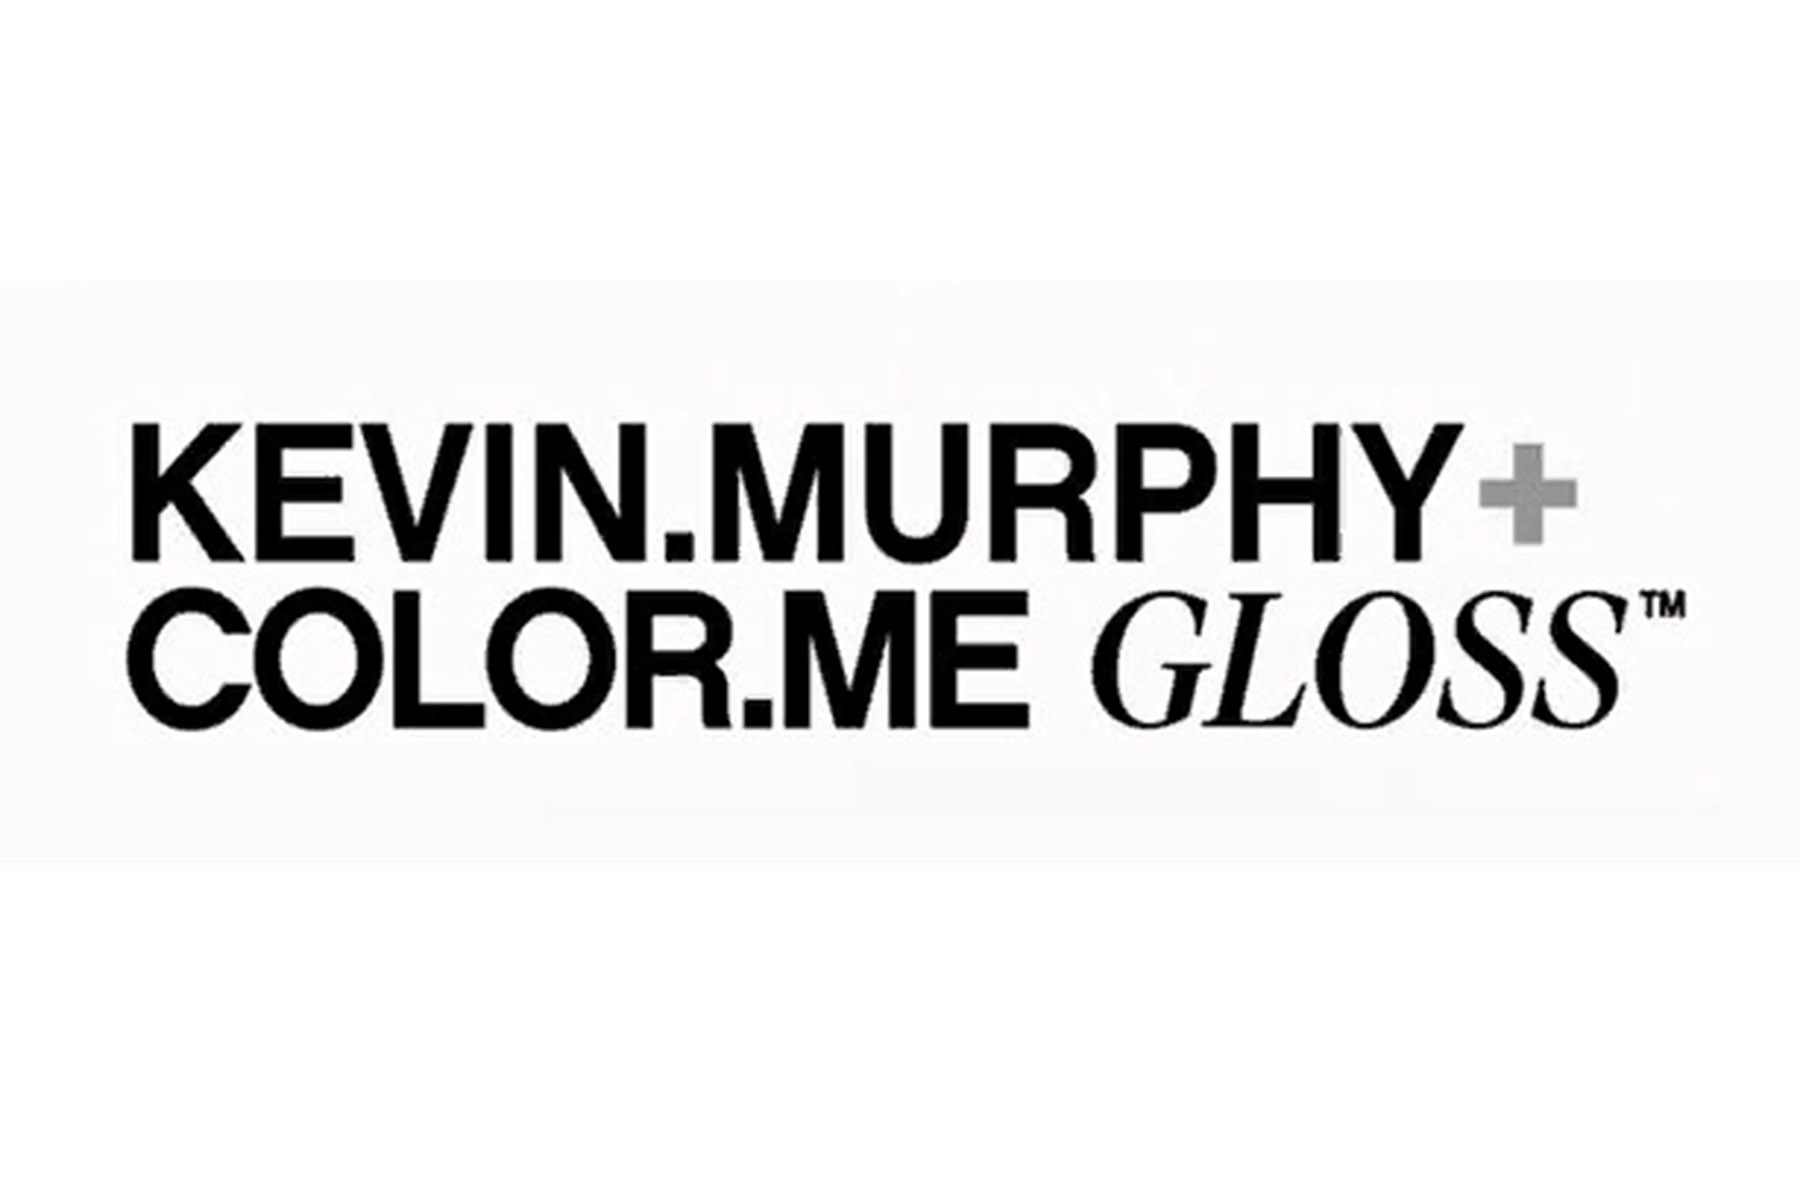 Косметика бренда KEVIN.MURPHY + COLOR.ME GLOSS, логотип